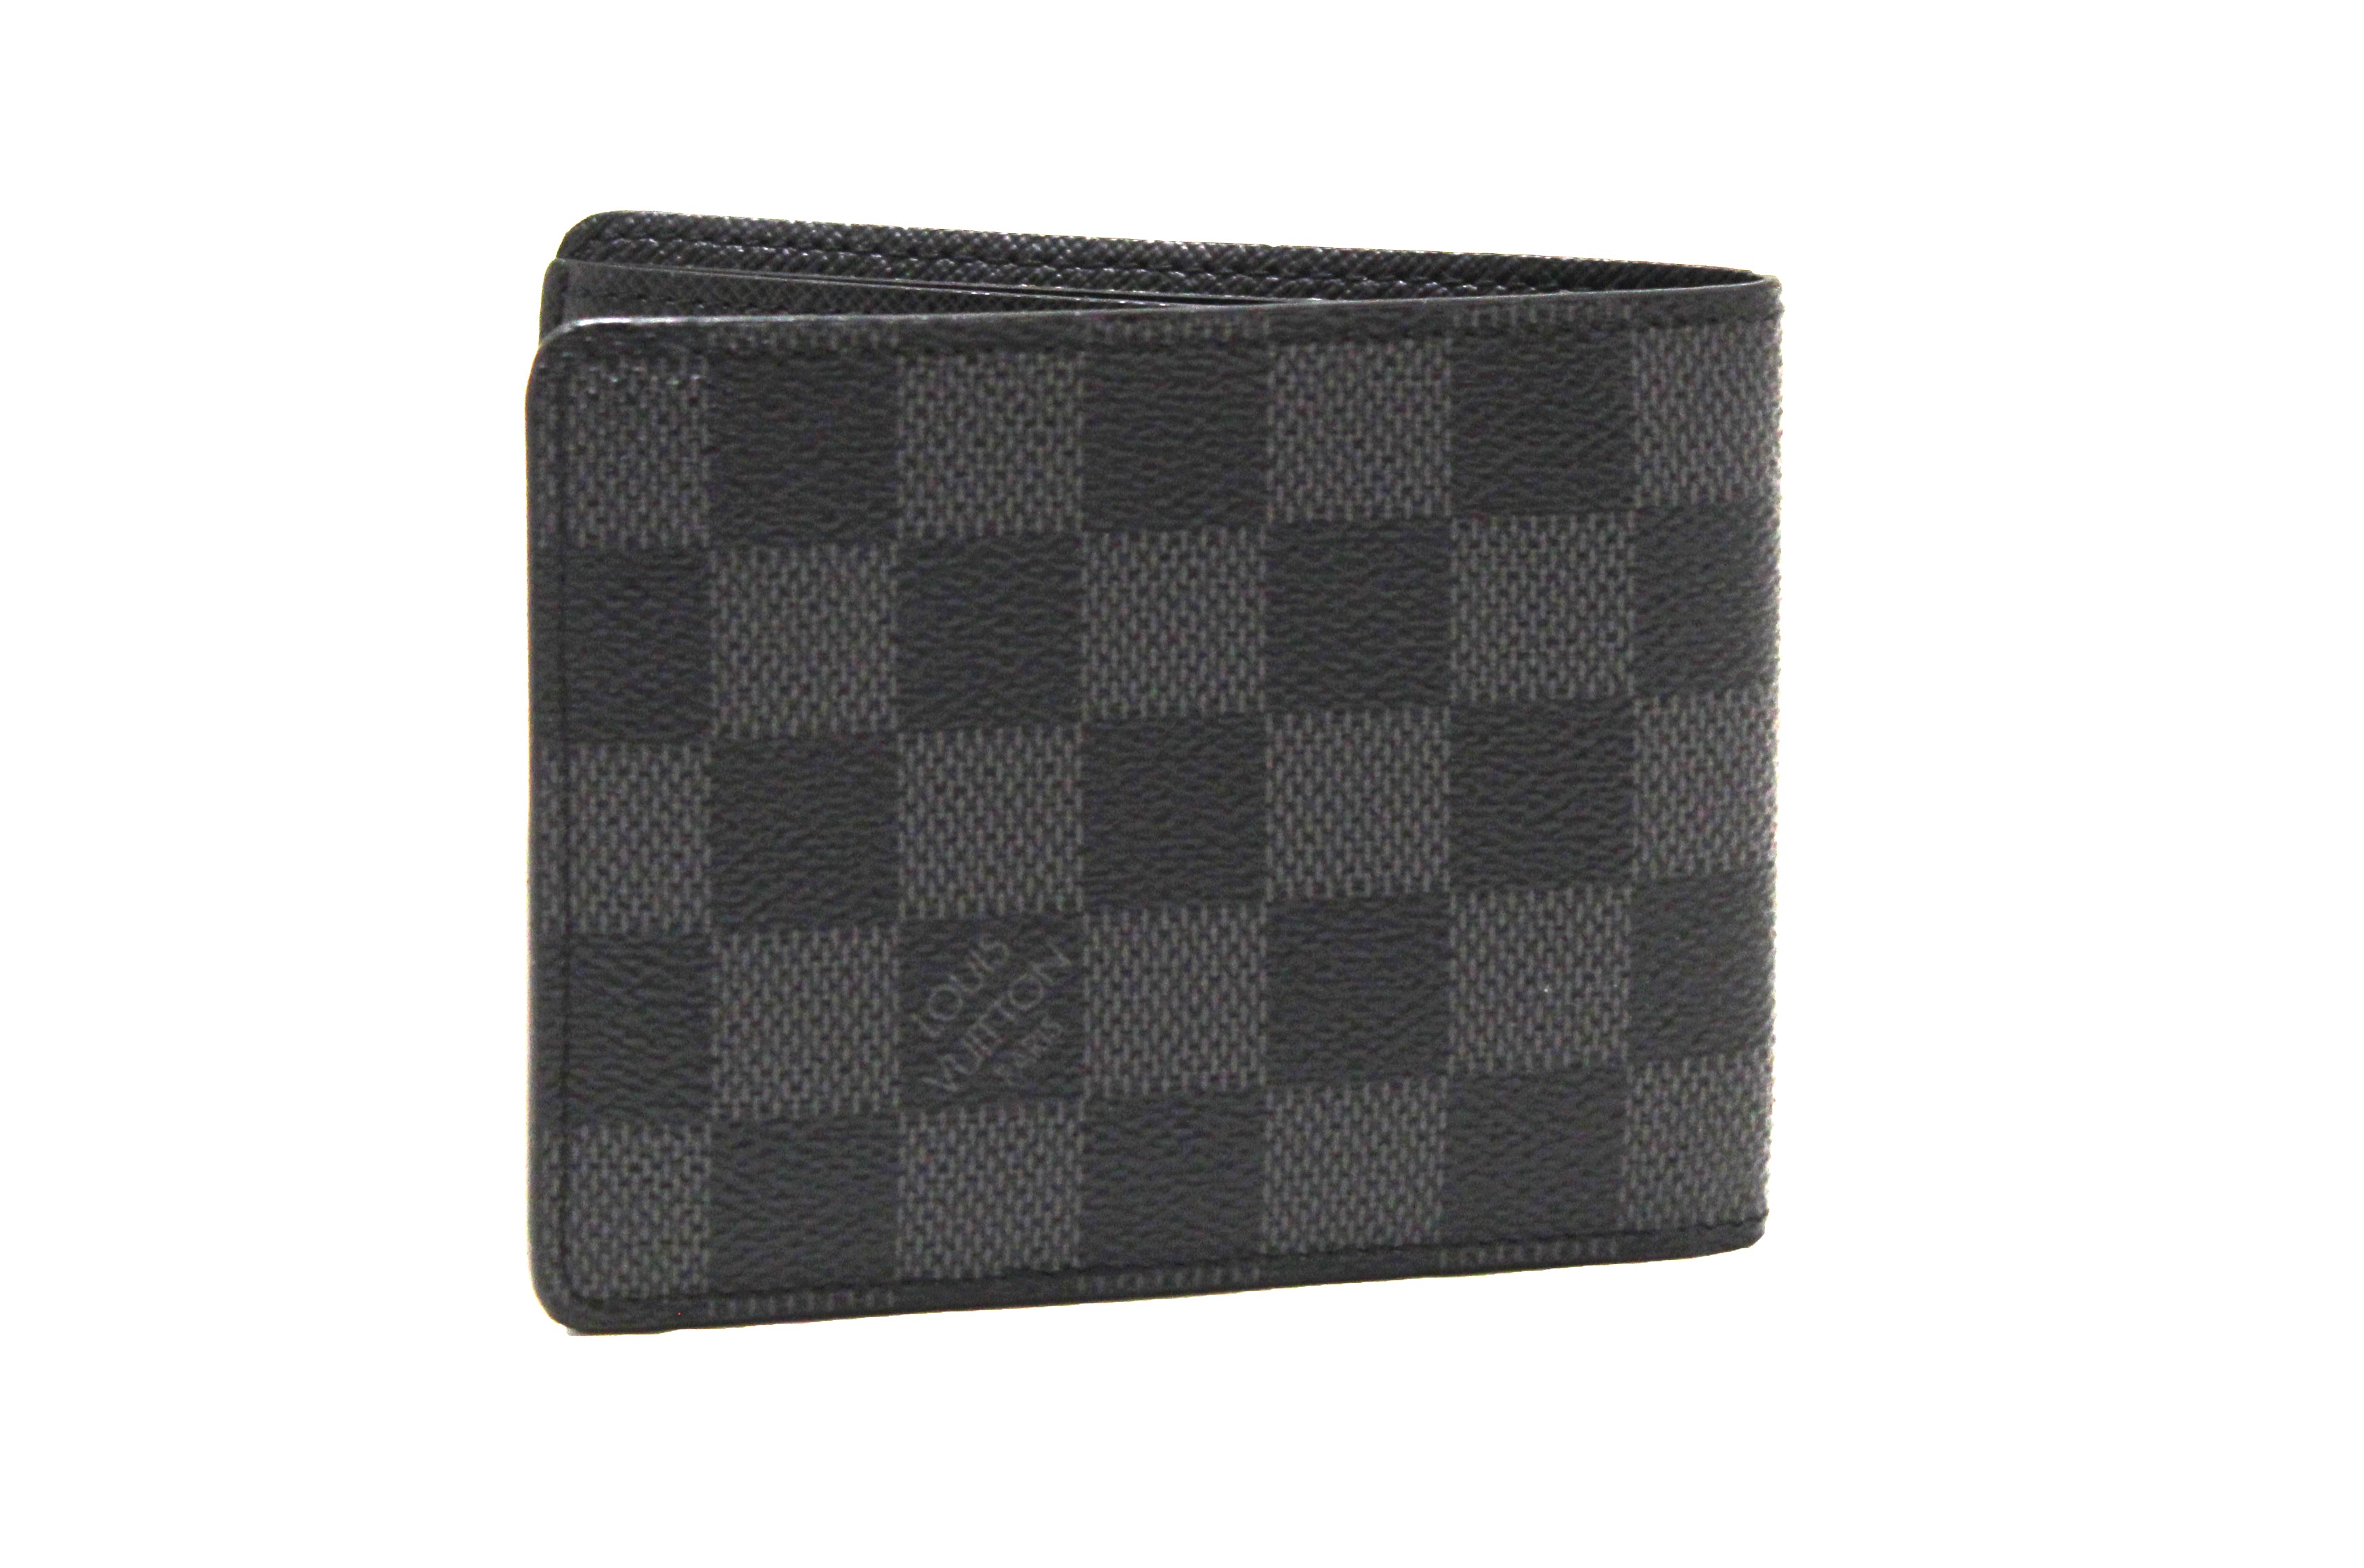 Authentic Louis Vuitton Damier Graphite Canvas Slender Men's Wallet